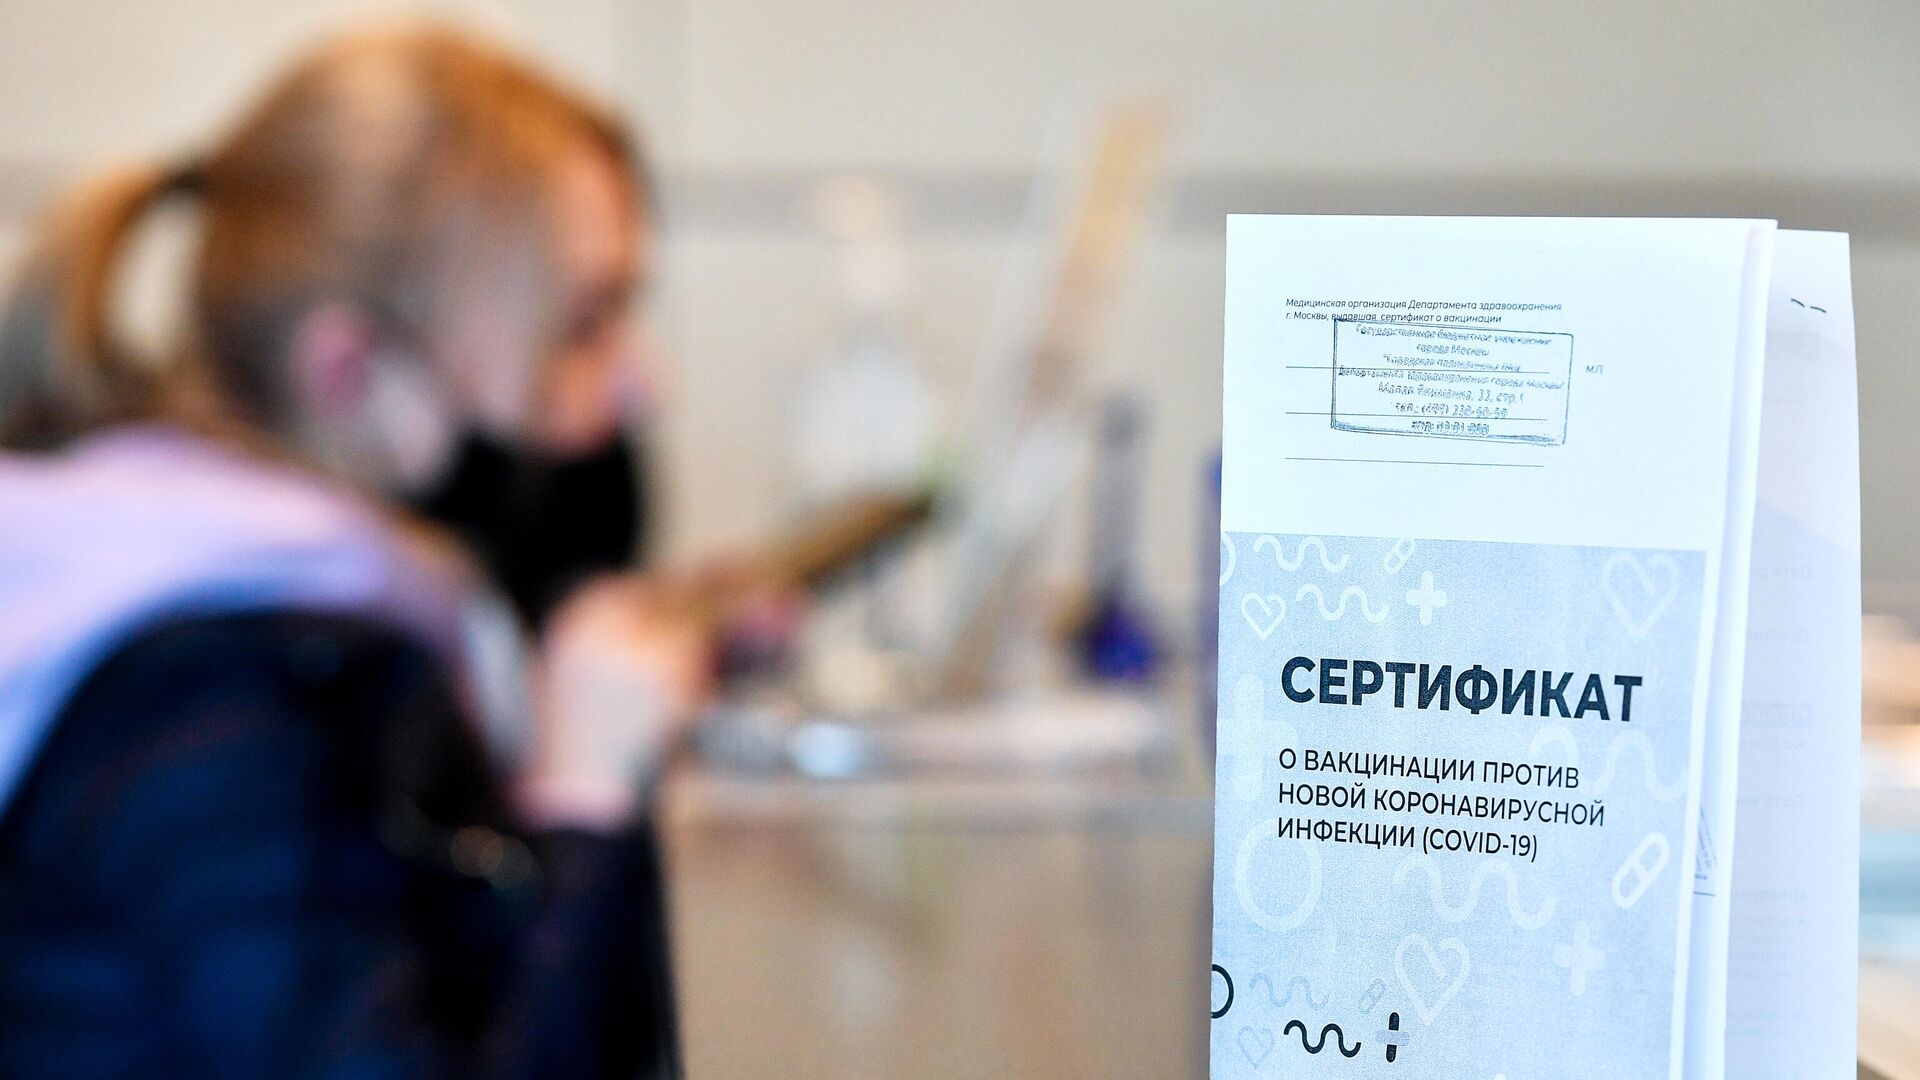 Пассажир получает сертификат международного образца о вакцинации от COVID-19 в аэропорту Домодедово - РИА Новости, 1920, 25.03.2021